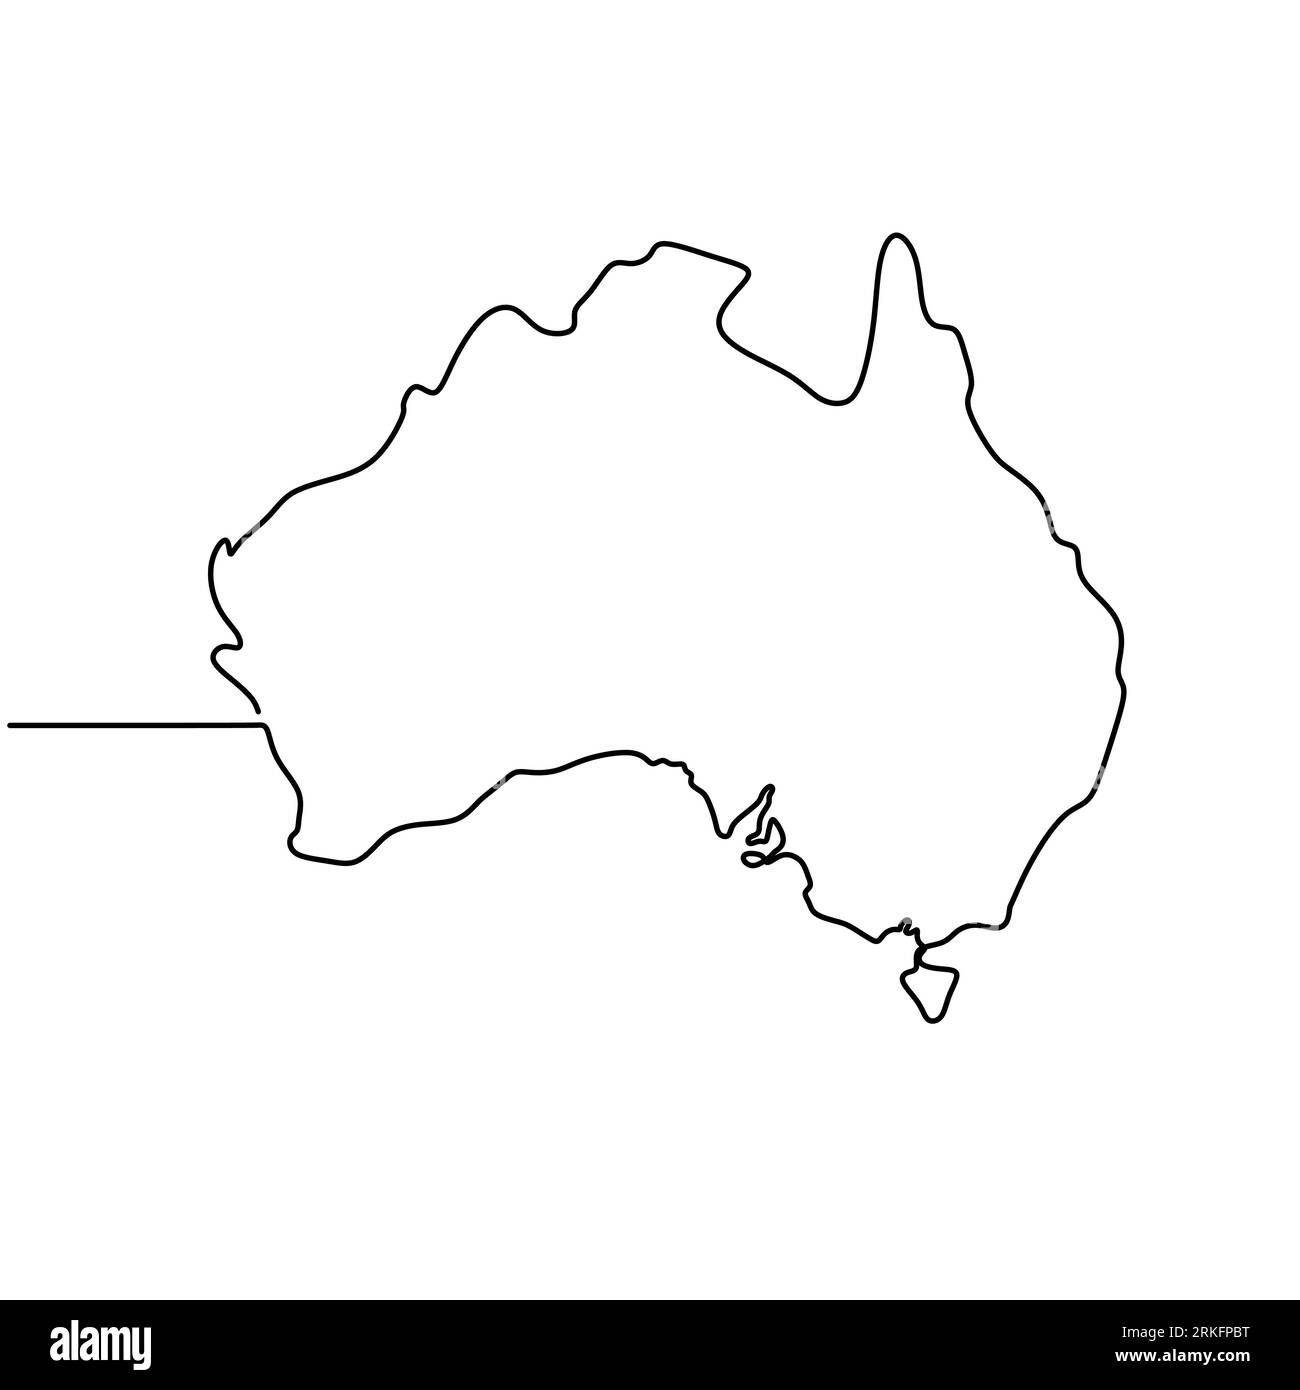 Un dessin d'illustration en ligne continue de l'Australie. Résumé contour continent australien, carte géographique isolée sur fond blanc. Joyeux Aus Illustration de Vecteur